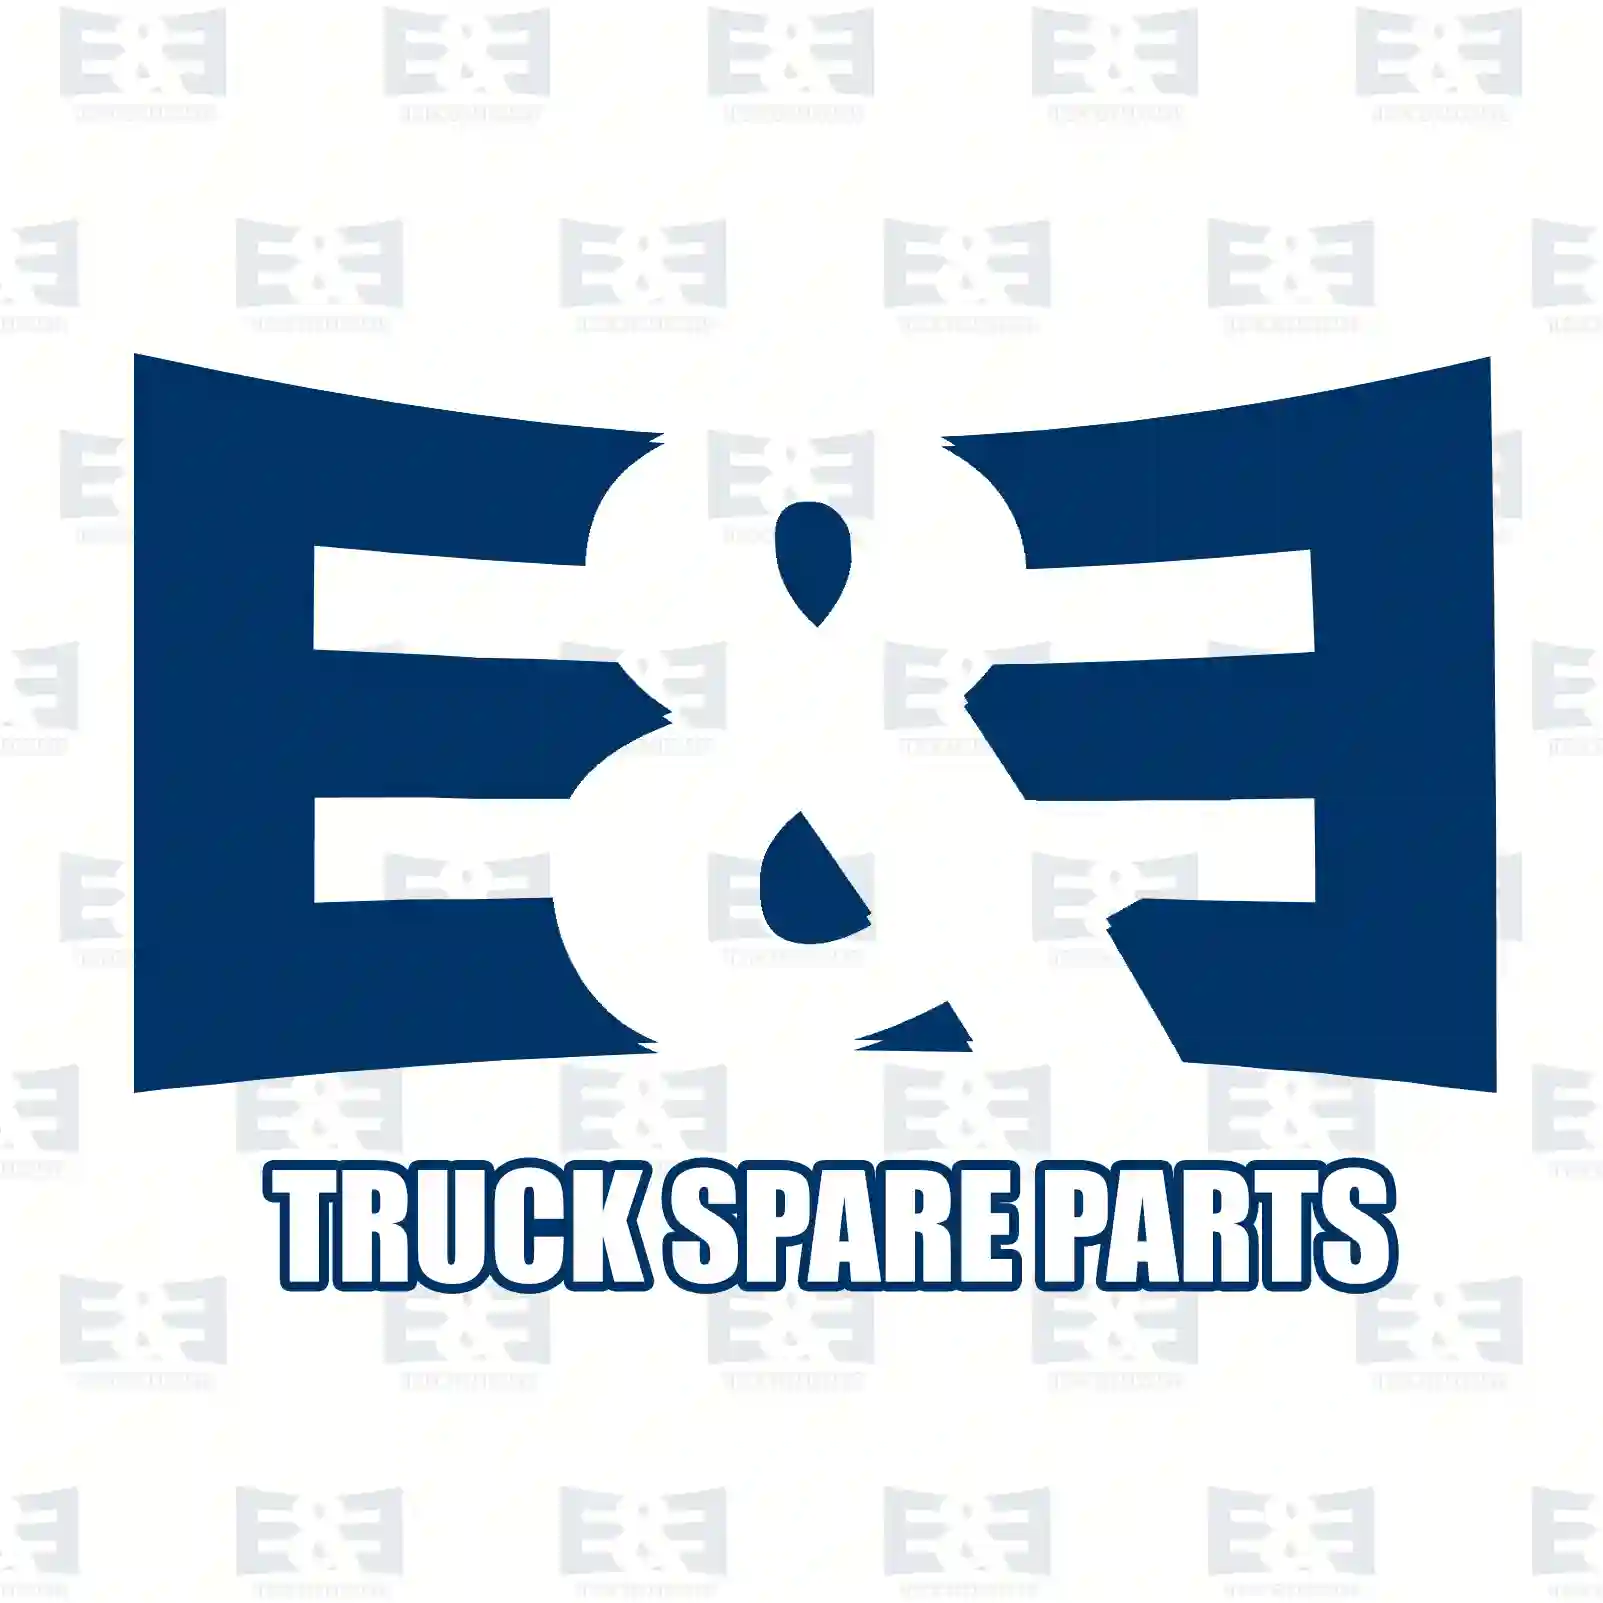 Level valve, 2E2275899, 1331721 ||  2E2275899 E&E Truck Spare Parts | Truck Spare Parts, Auotomotive Spare Parts Level valve, 2E2275899, 1331721 ||  2E2275899 E&E Truck Spare Parts | Truck Spare Parts, Auotomotive Spare Parts